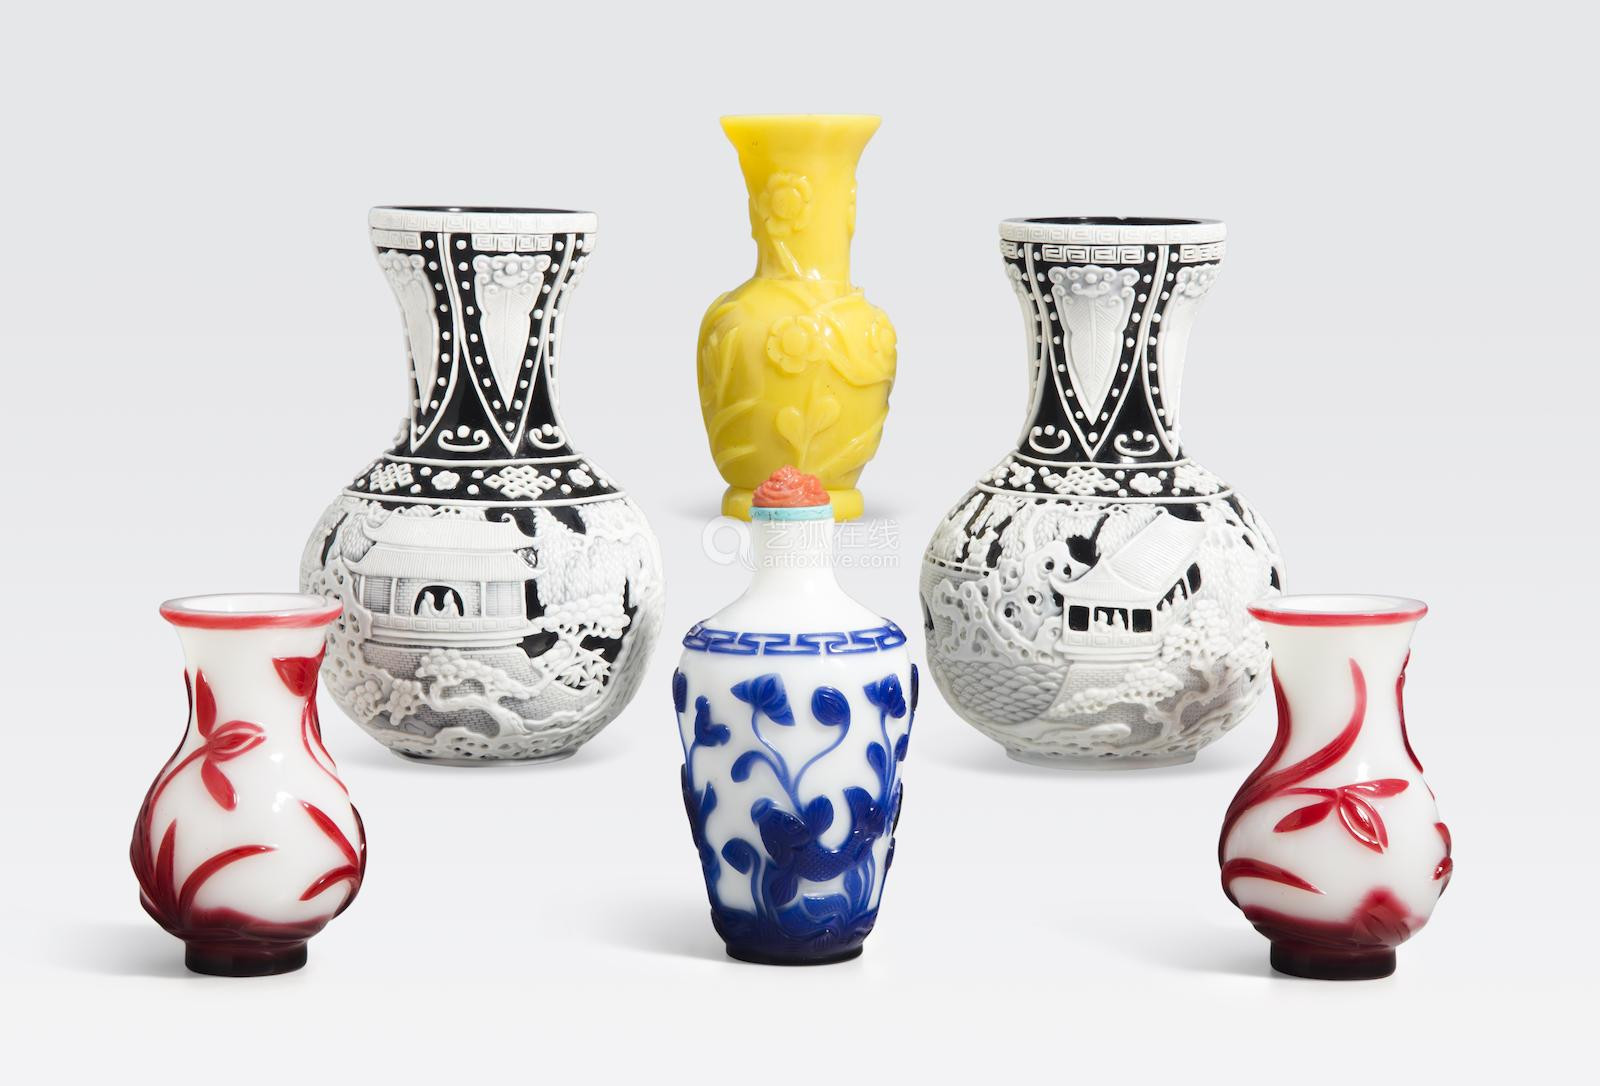 30 Lovable Peking Glass Vase for Sale 2024 free download peking glass vase for sale of a group of six small peking glass vasesic2bcc28dac280c290deal price pictureac280c291 for a group of six small peking glass vases